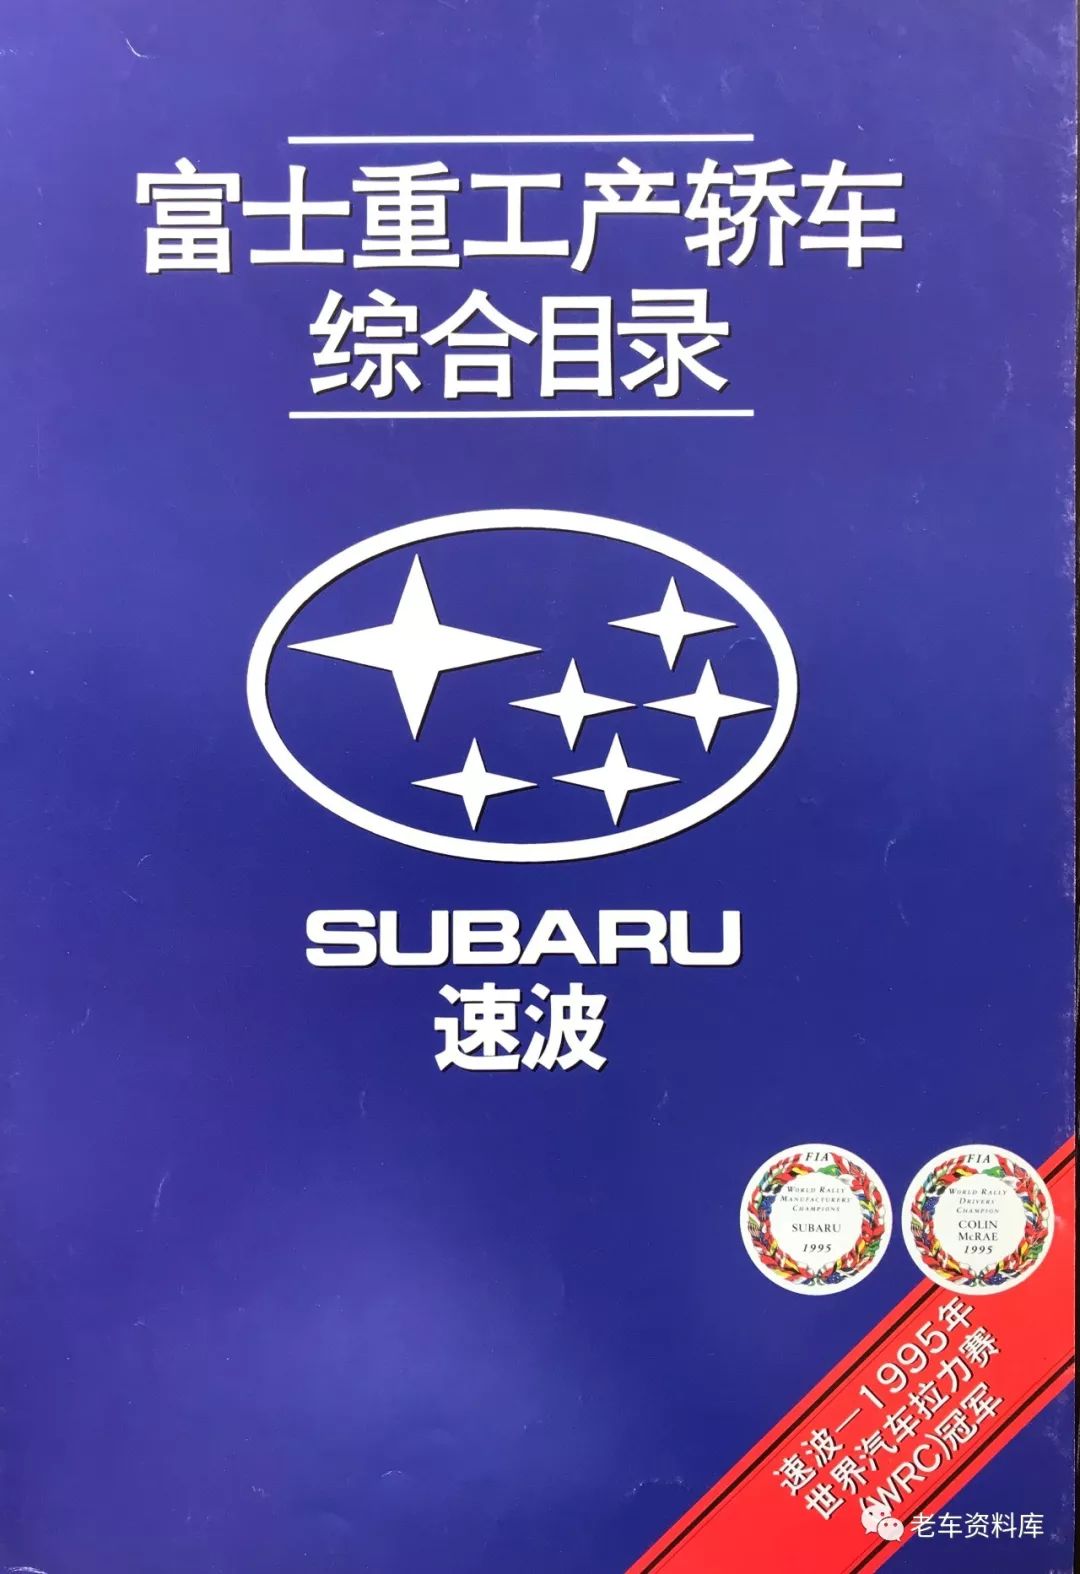 Subaru 中文